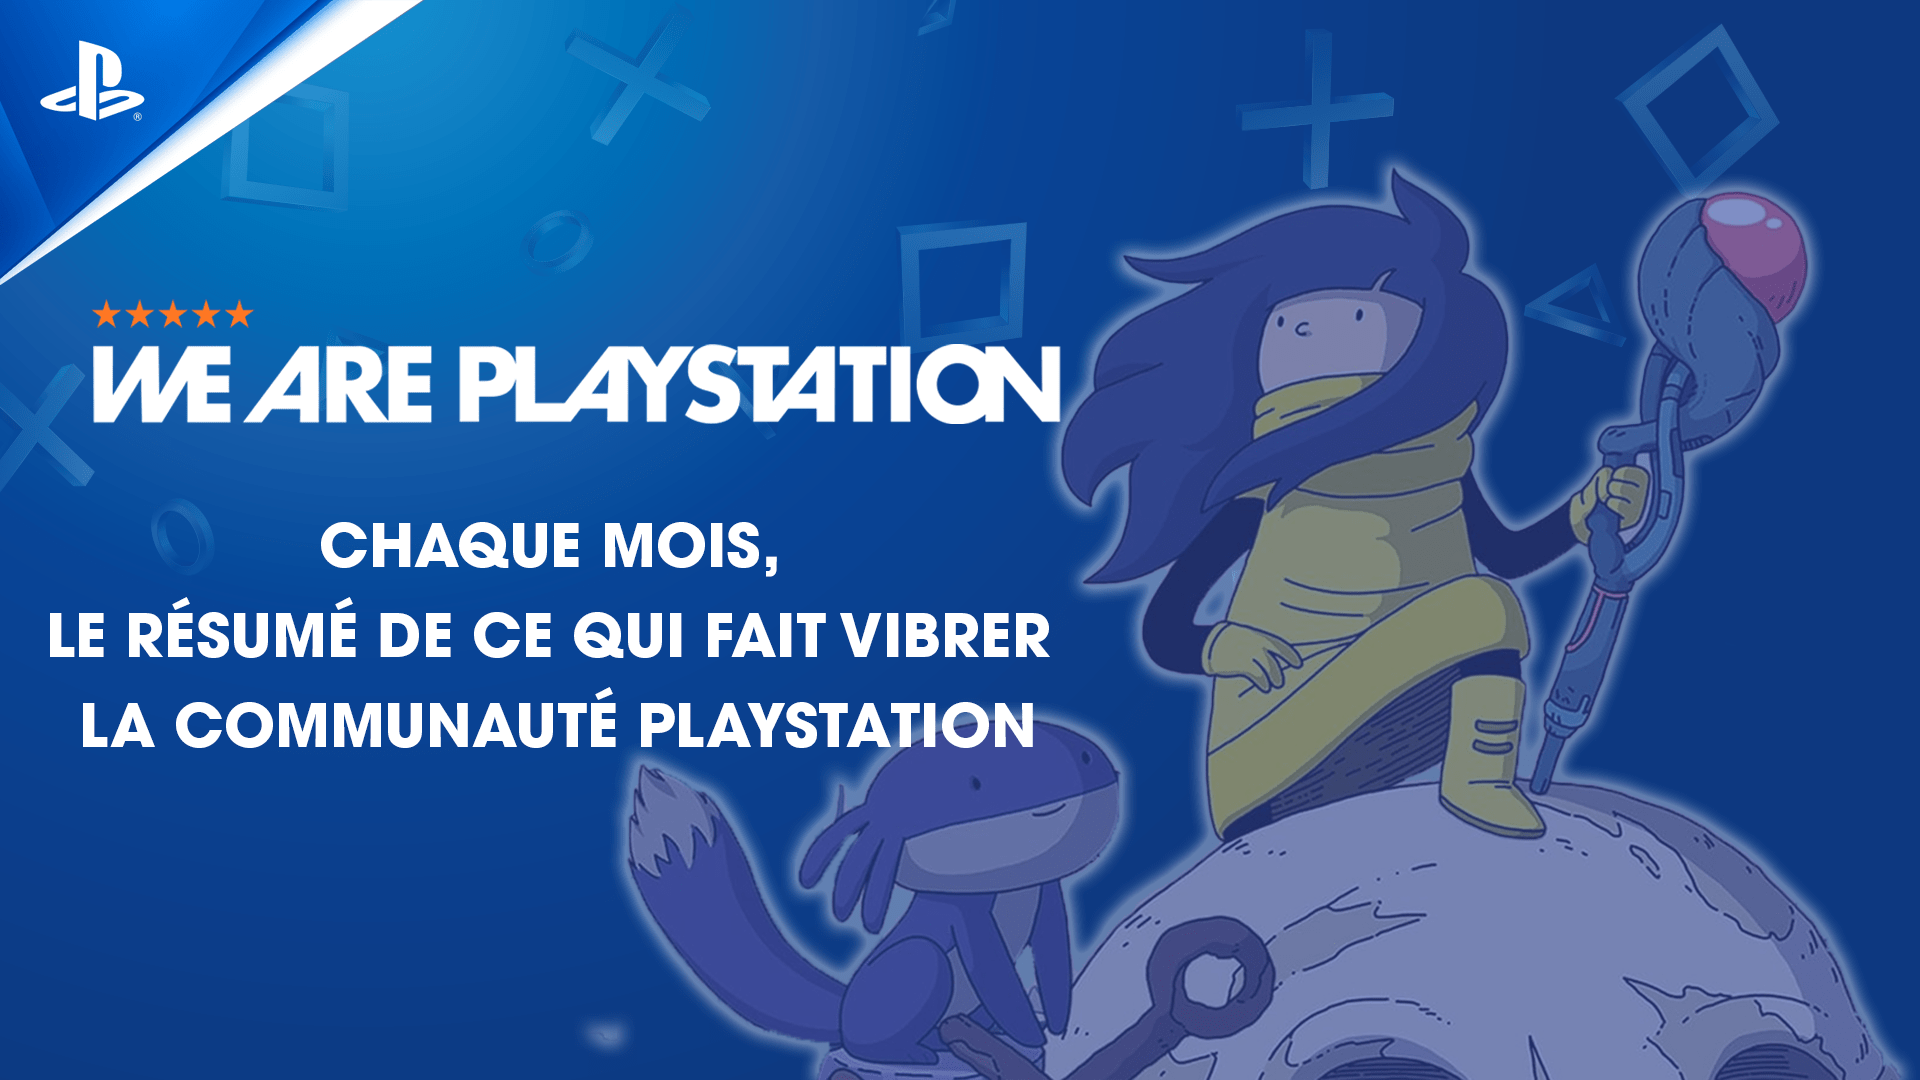 Chaque mois, retrouvez l’actu qui a marqué la communauté PlayStation sur #WeArePlayStation !